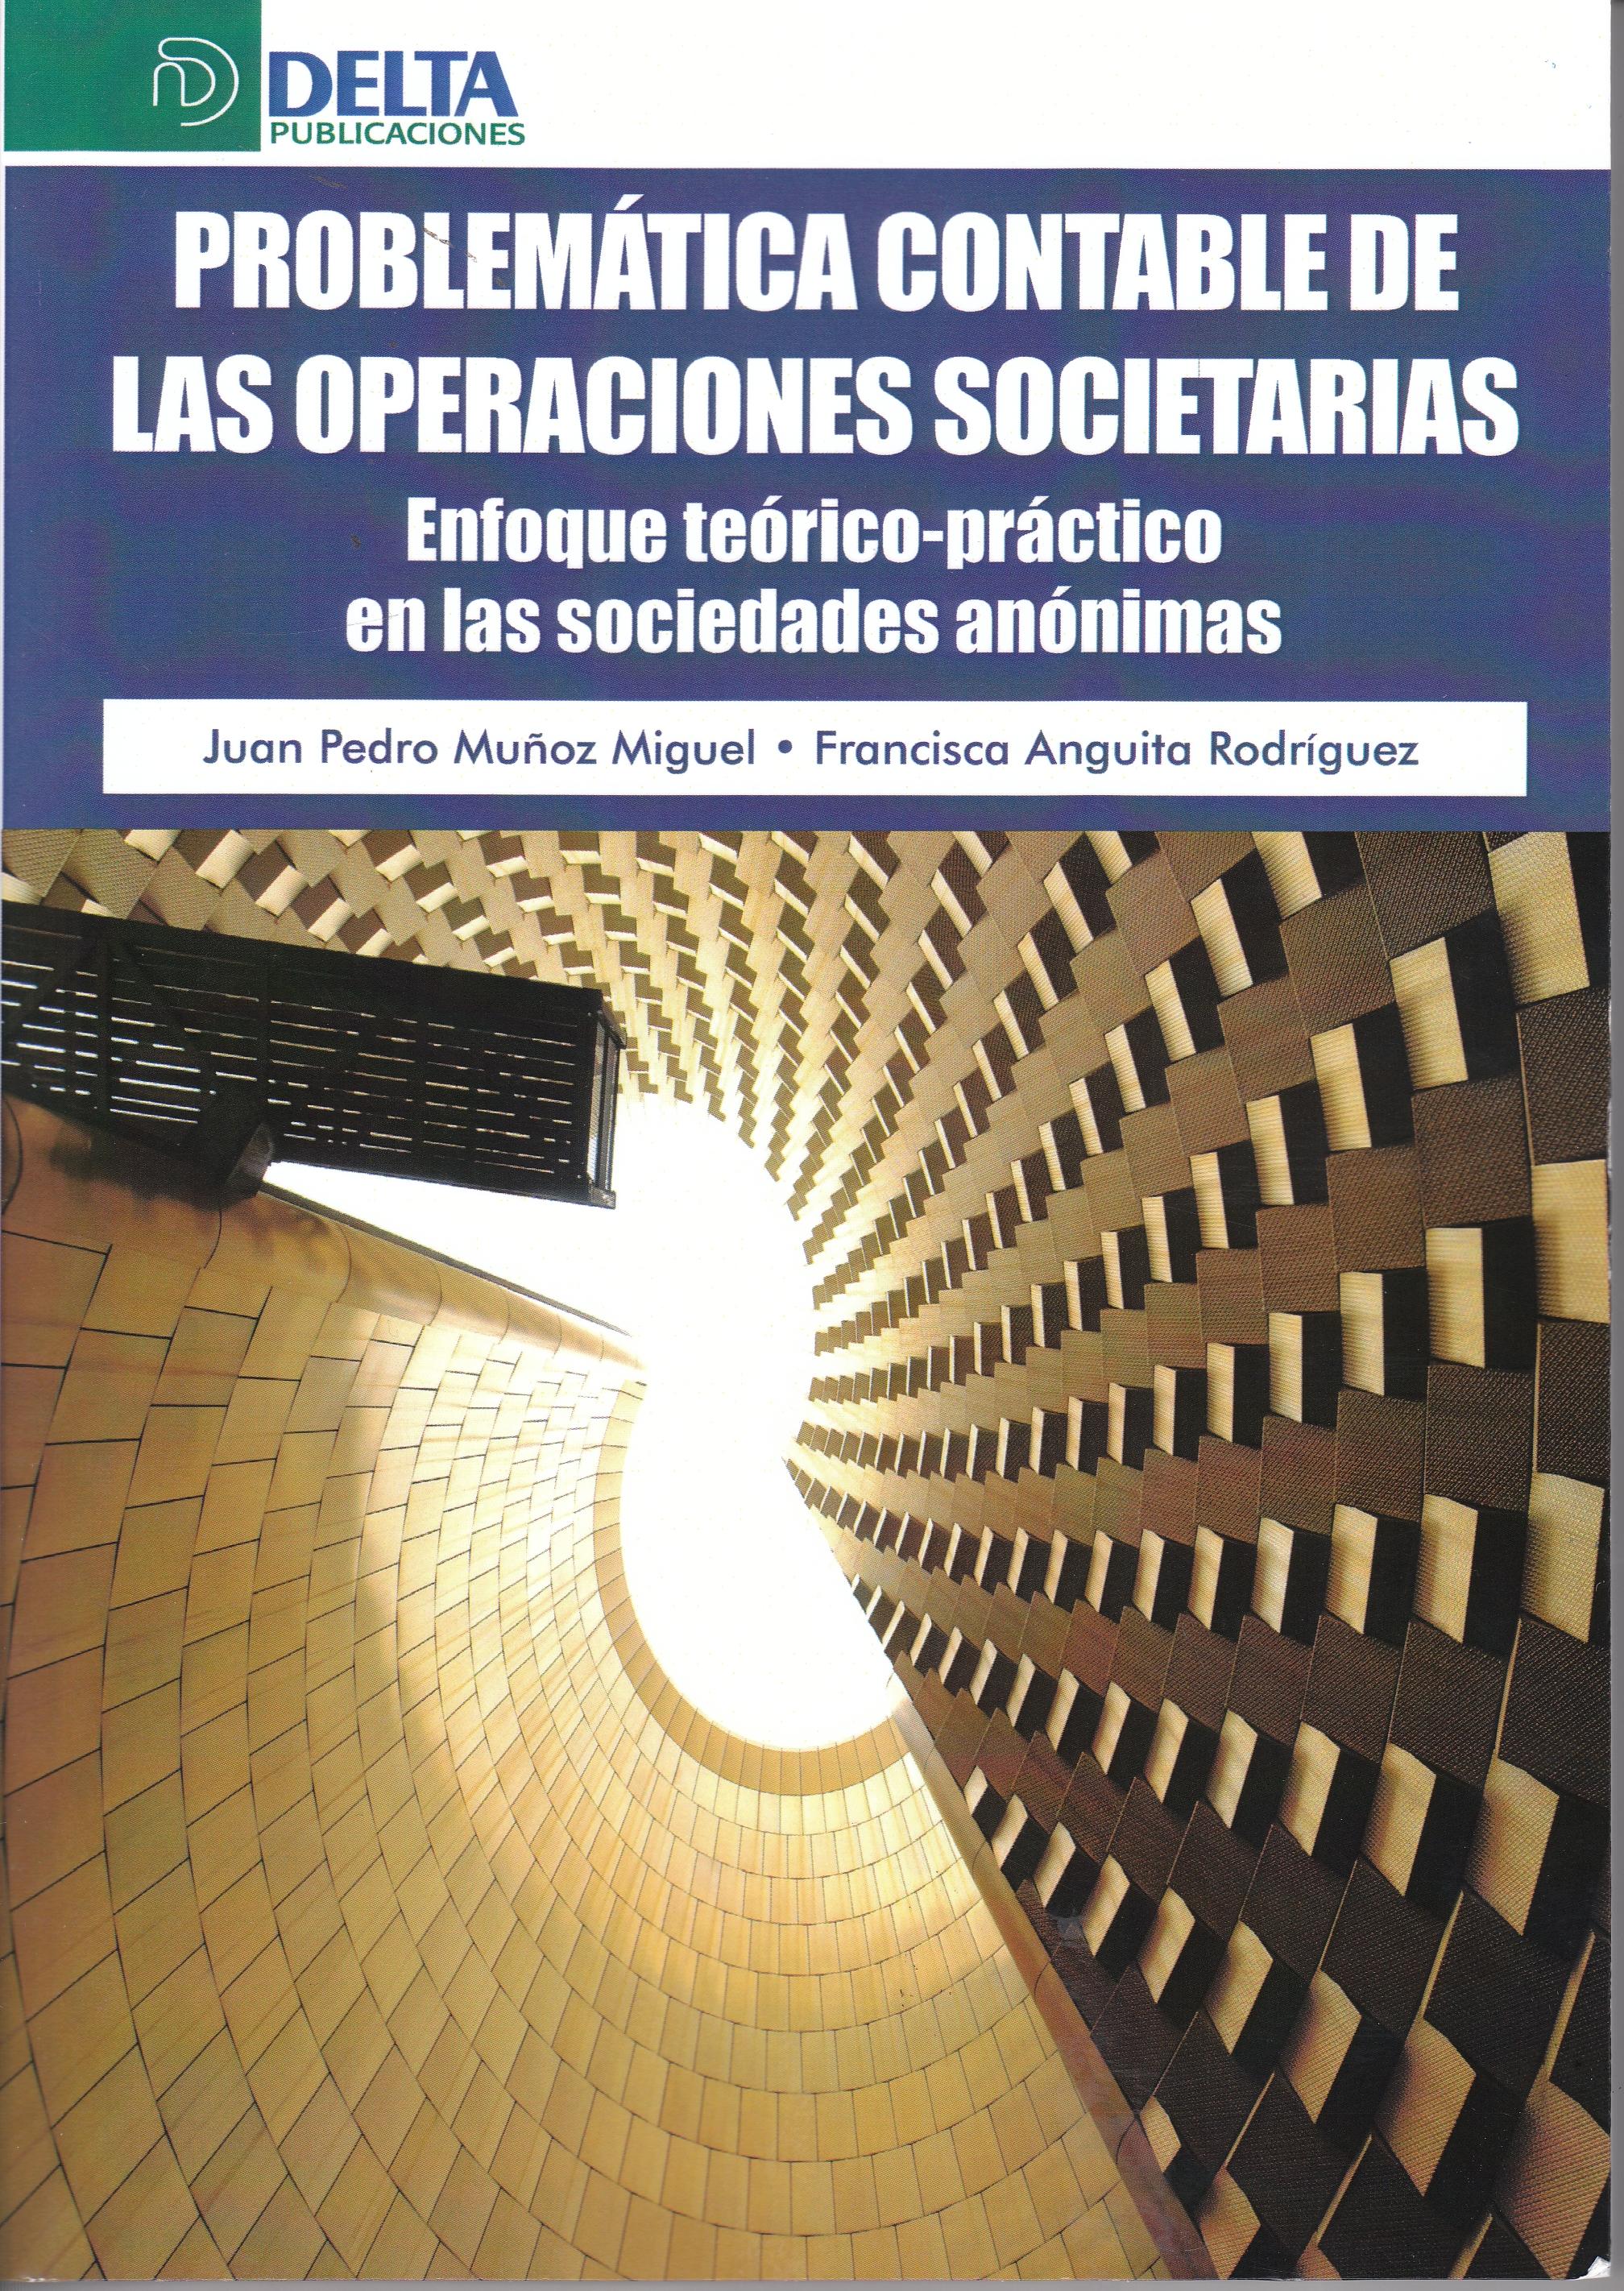 Problemática contable de las operaciones societarias "Enfoque teórico-práctico en las sociedades anónimas"